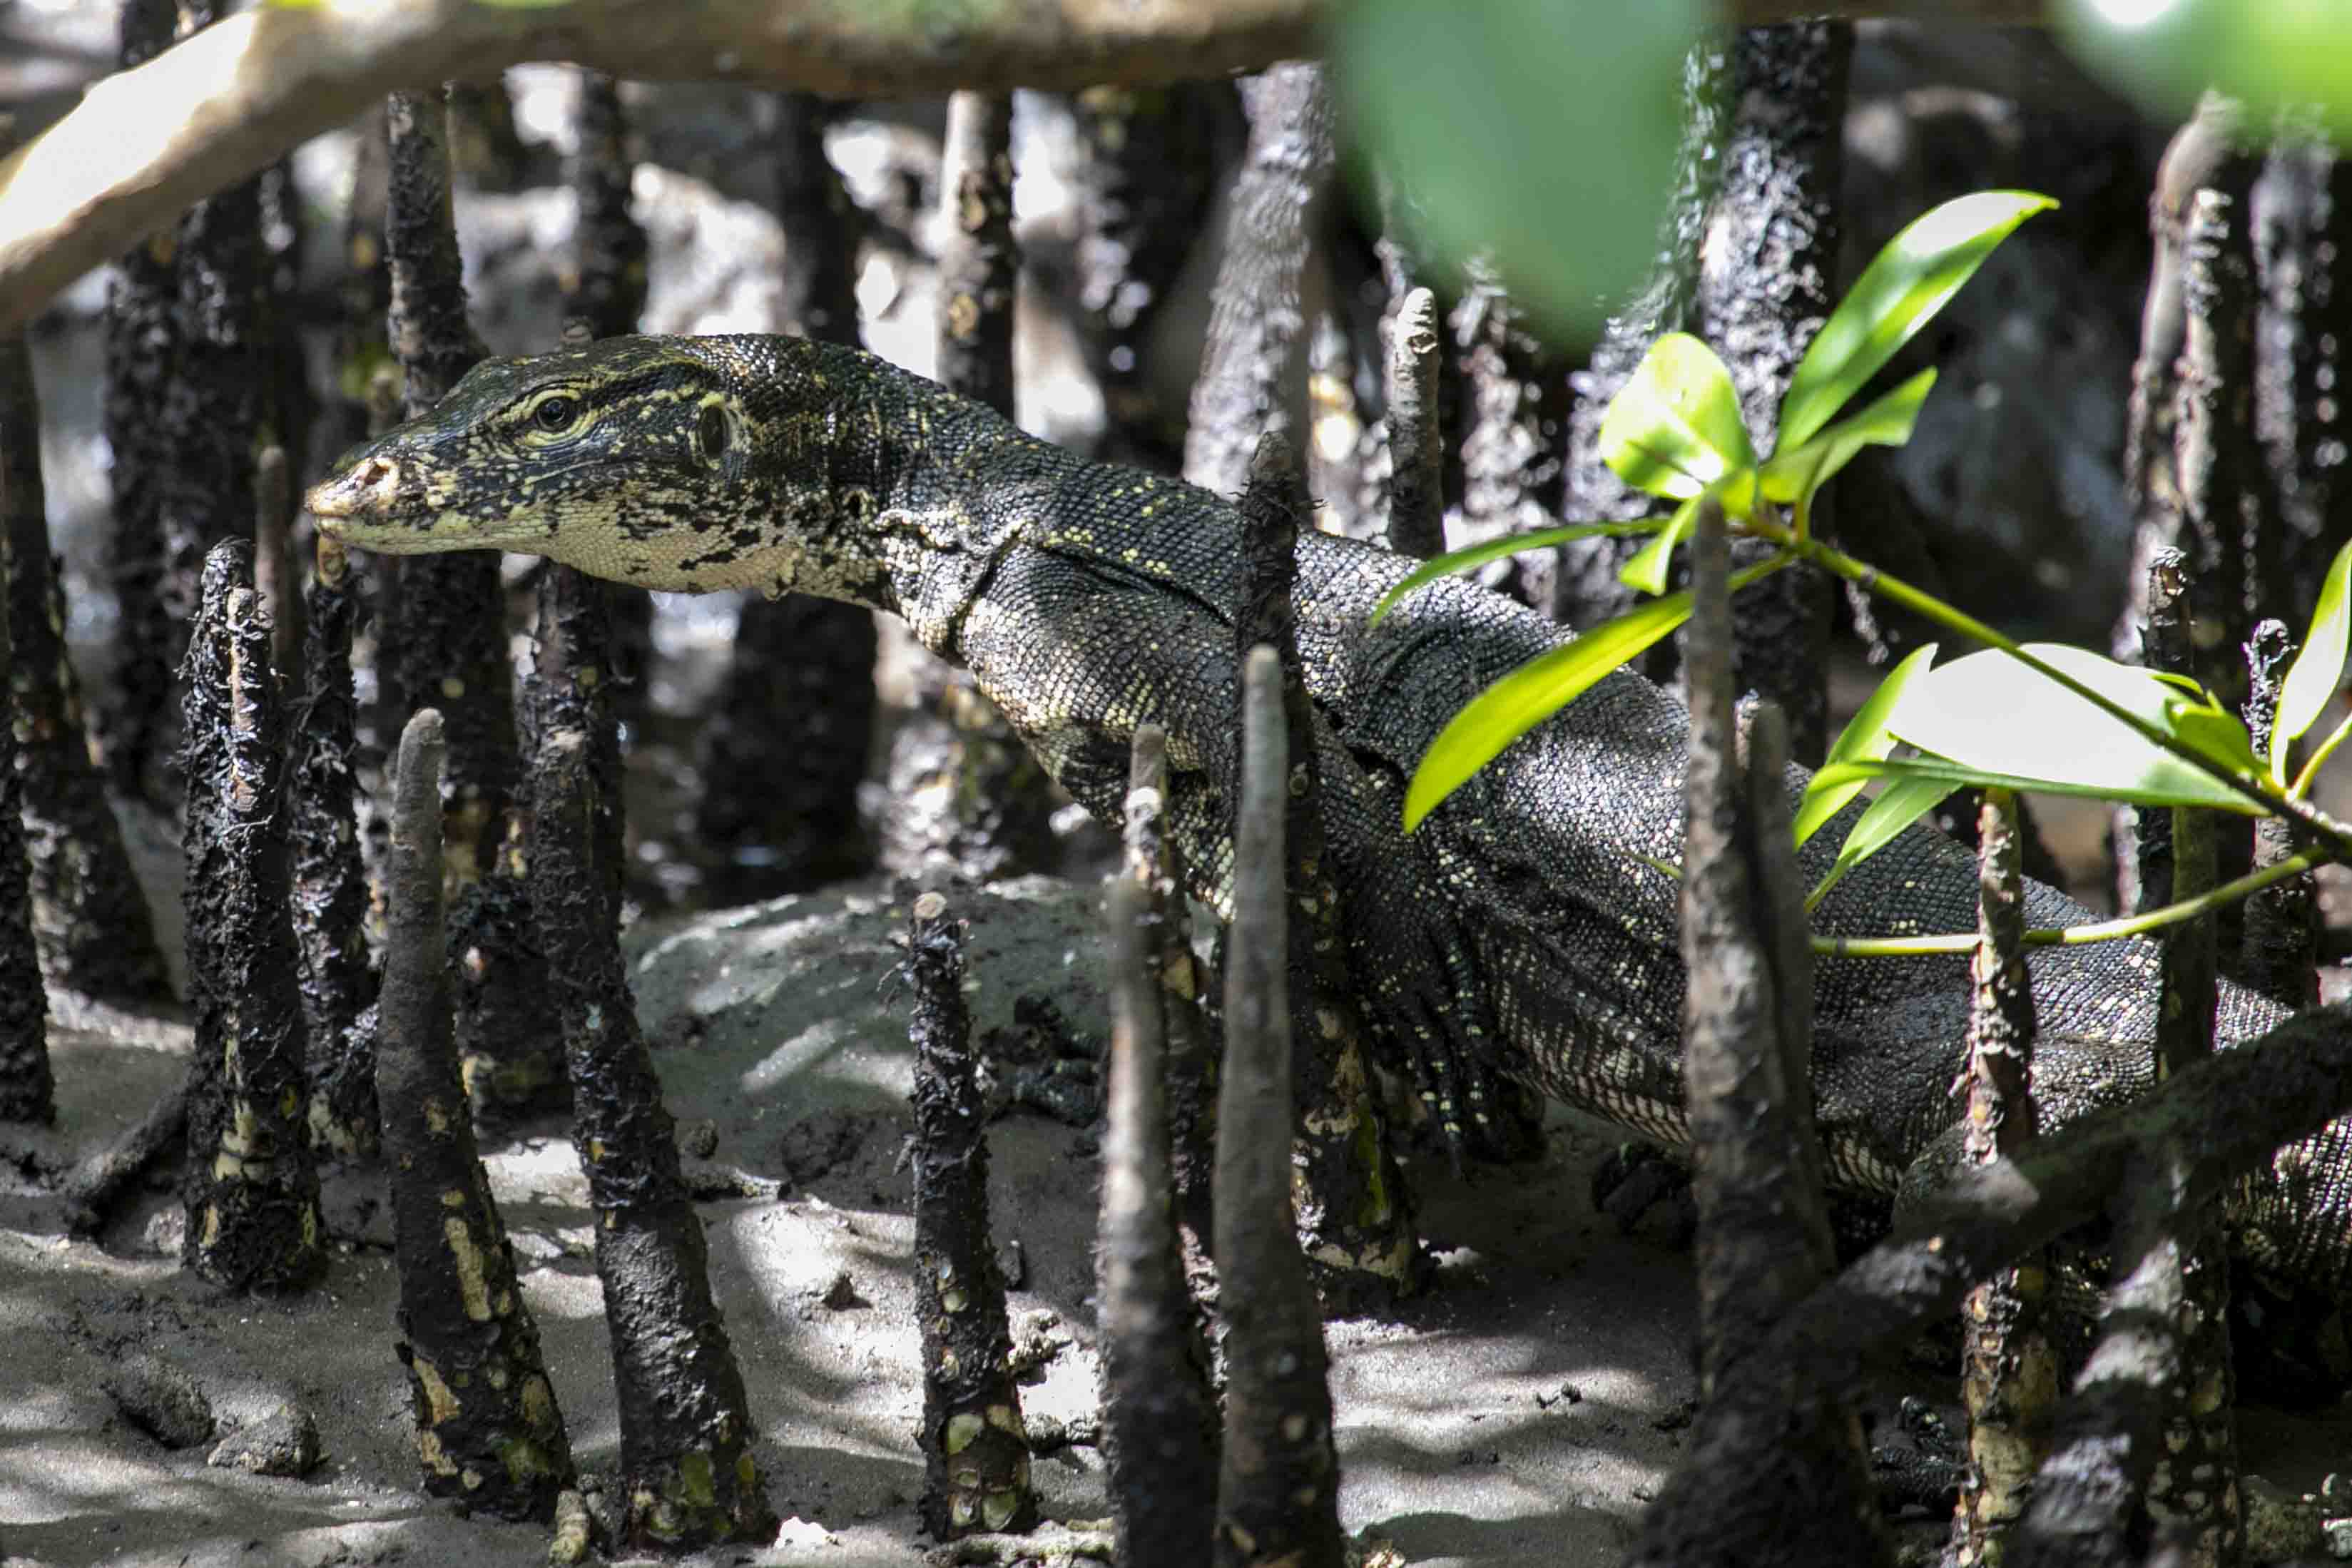 Asian water monitor lizard